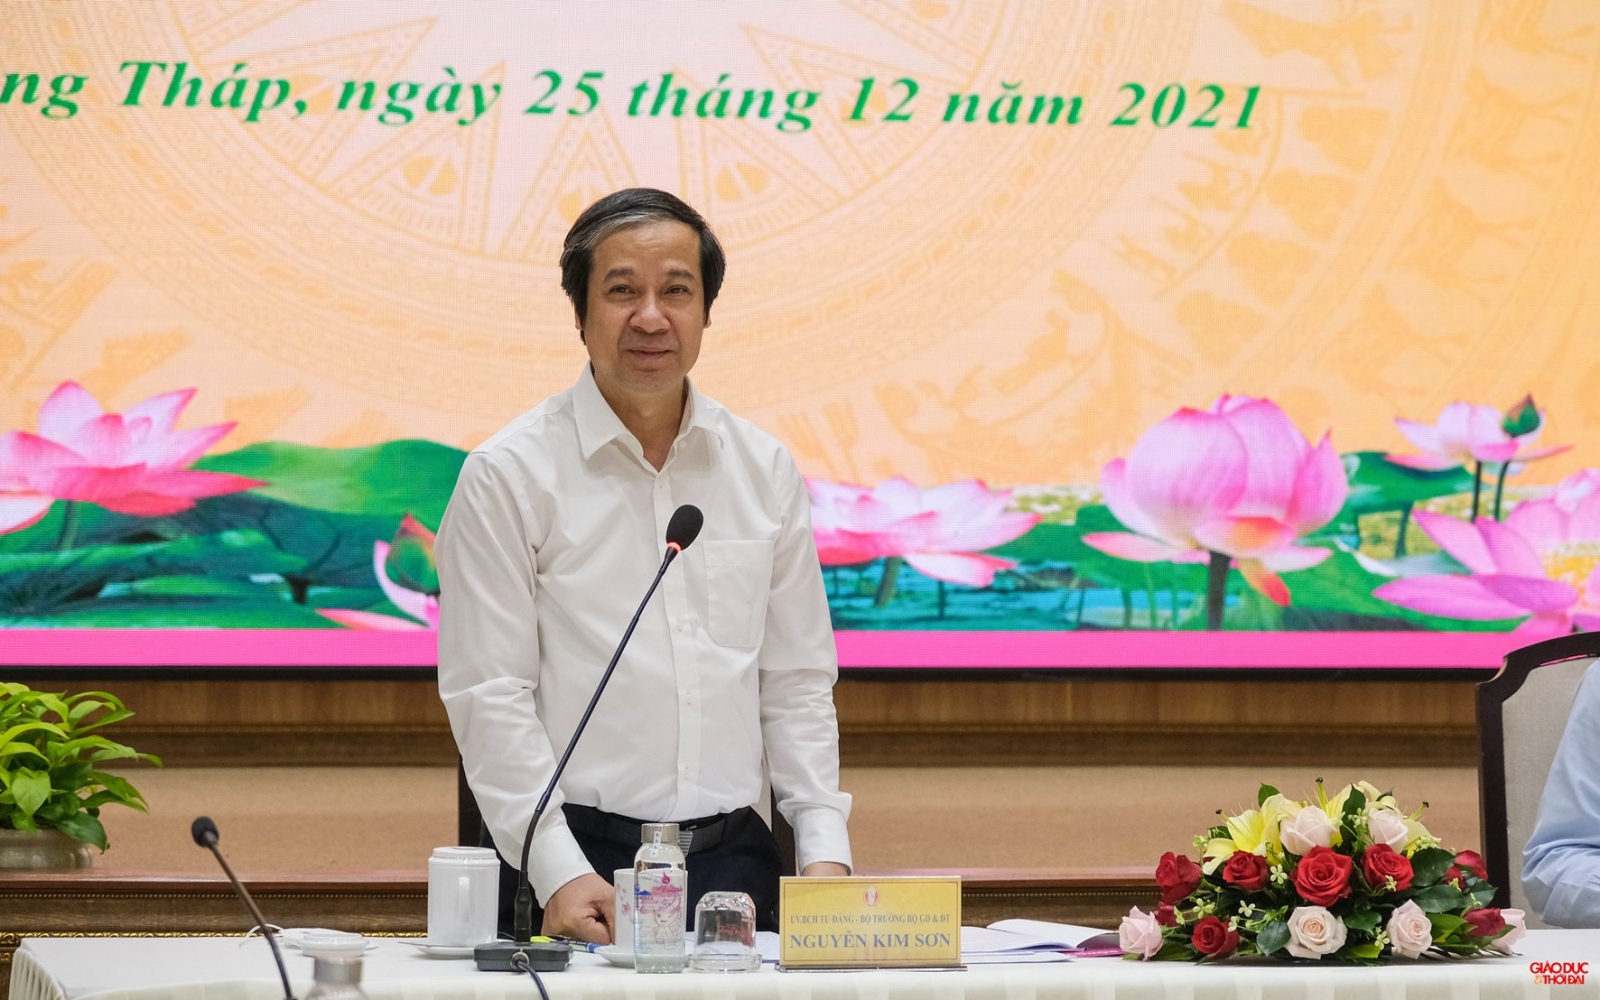 Bộ trưởng Nguyễn Kim Sơn: Đồng Tháp cần chú trọng củng cố kiến thức, kỹ năng khi học sinh quay lại trường học - Ảnh minh hoạ 4